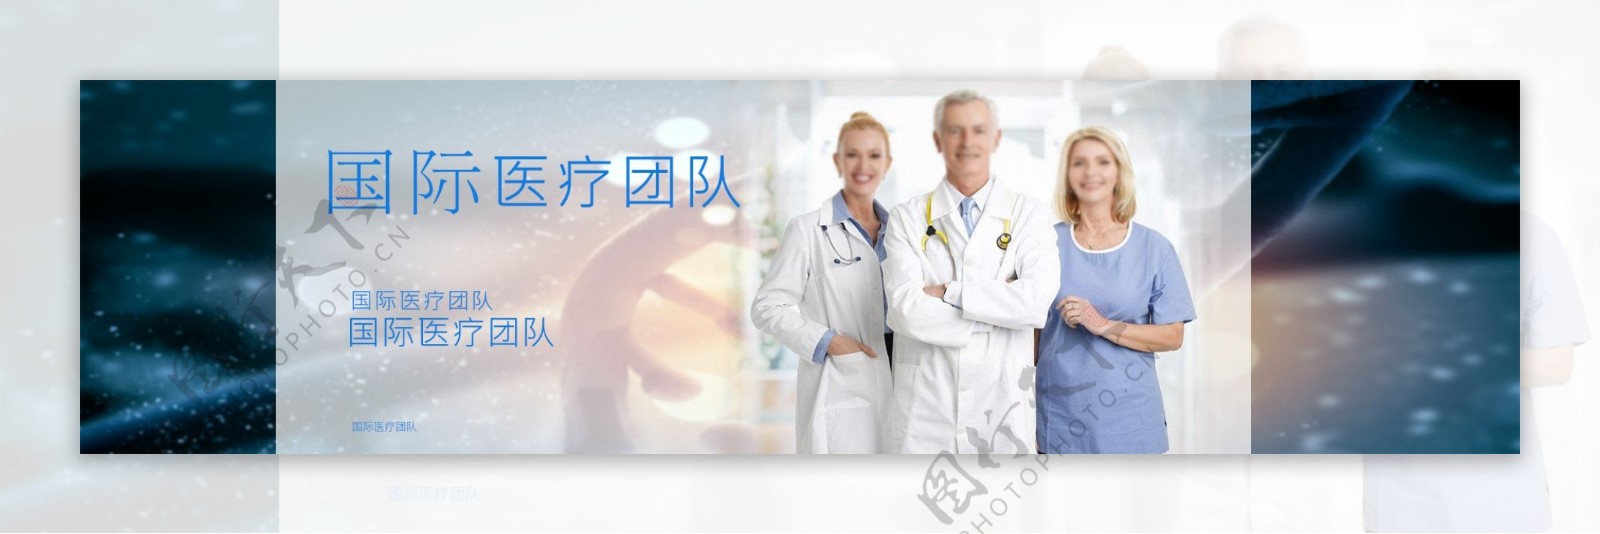 医疗团队网站banner